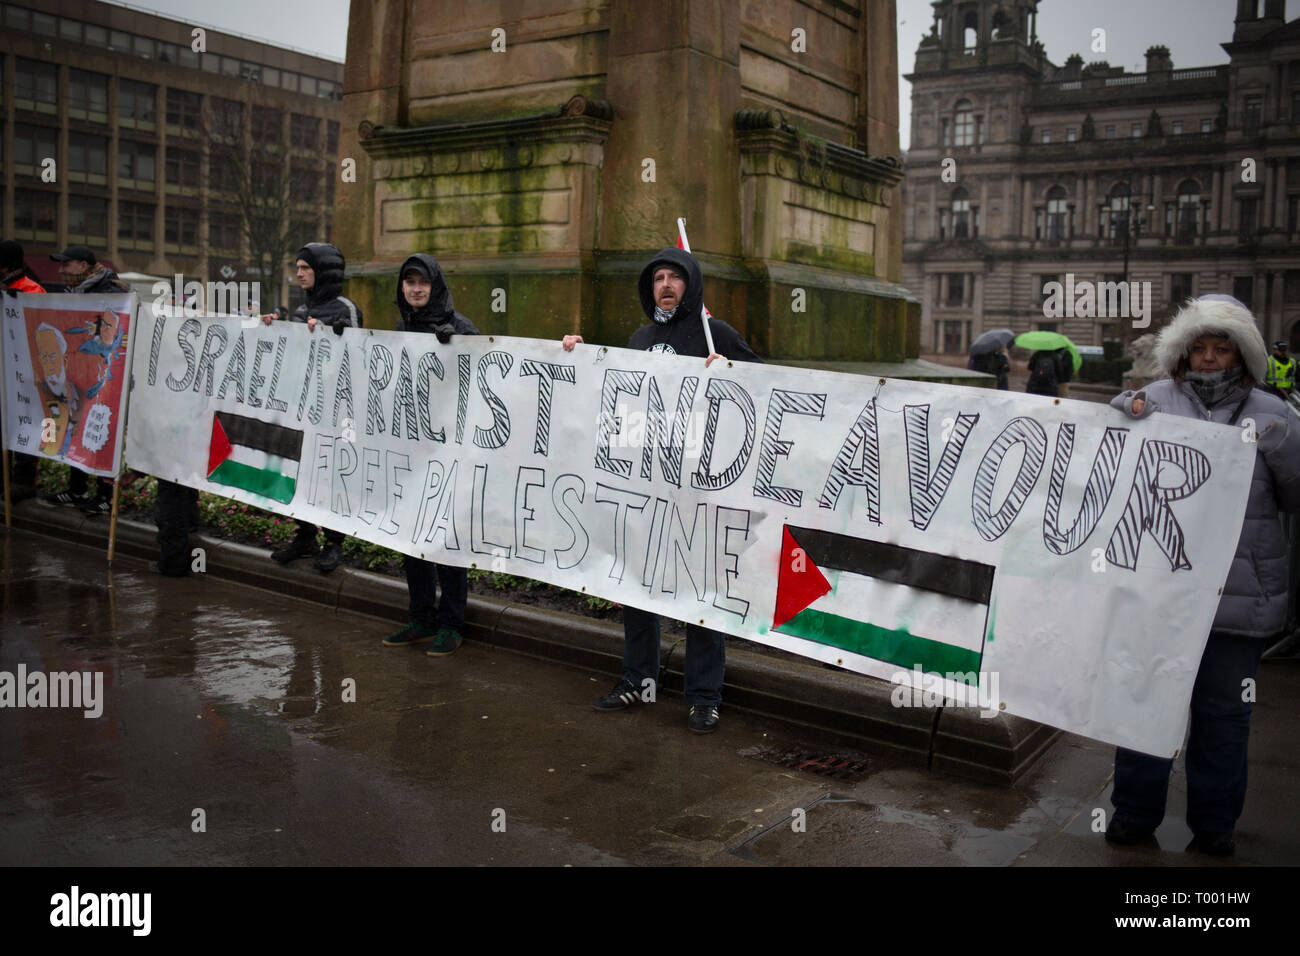 Glasgow, Schottland, 16. März 2019. Pro-Palestine und Pro-Israel Gruppen treffen sich an einer Anti-Rassismus-Rallye im George Square in Glasgow, Schottland, 16. März 2019. Foto von: Jeremy Sutton-Hibbert / alamy Leben Nachrichten. Stockfoto